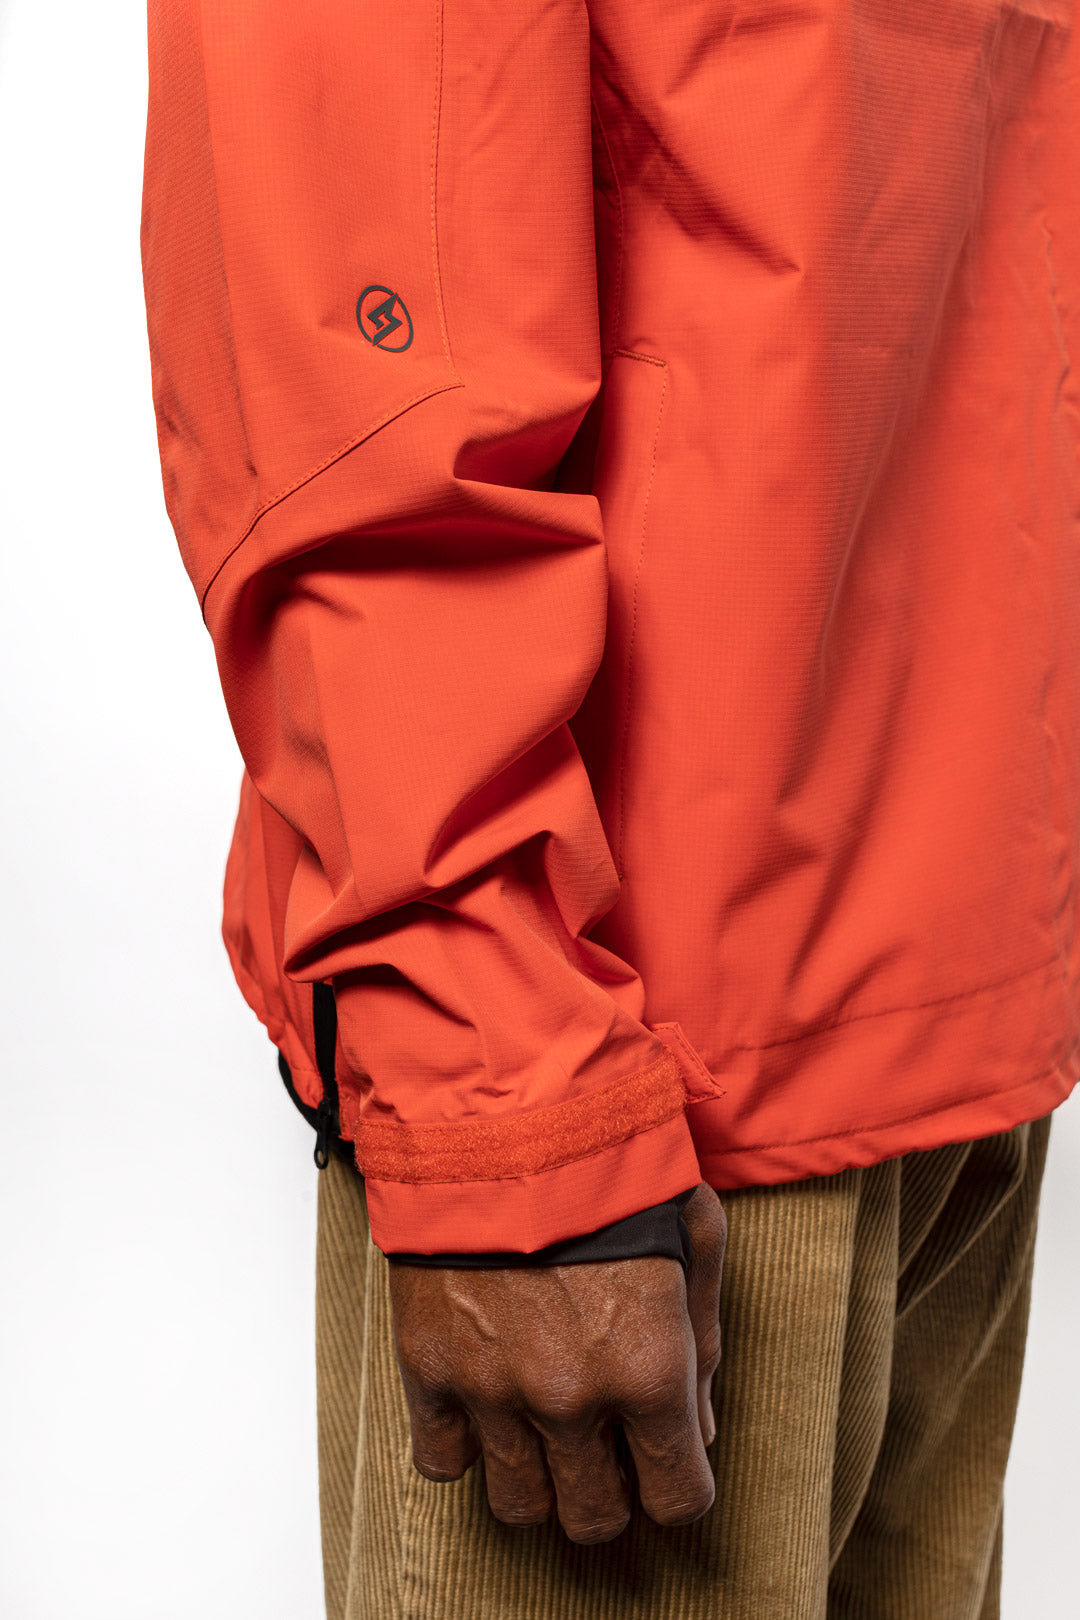 Side sleeve detail shot of male model wearing Vale Packable Anorak in blood orange colorway.